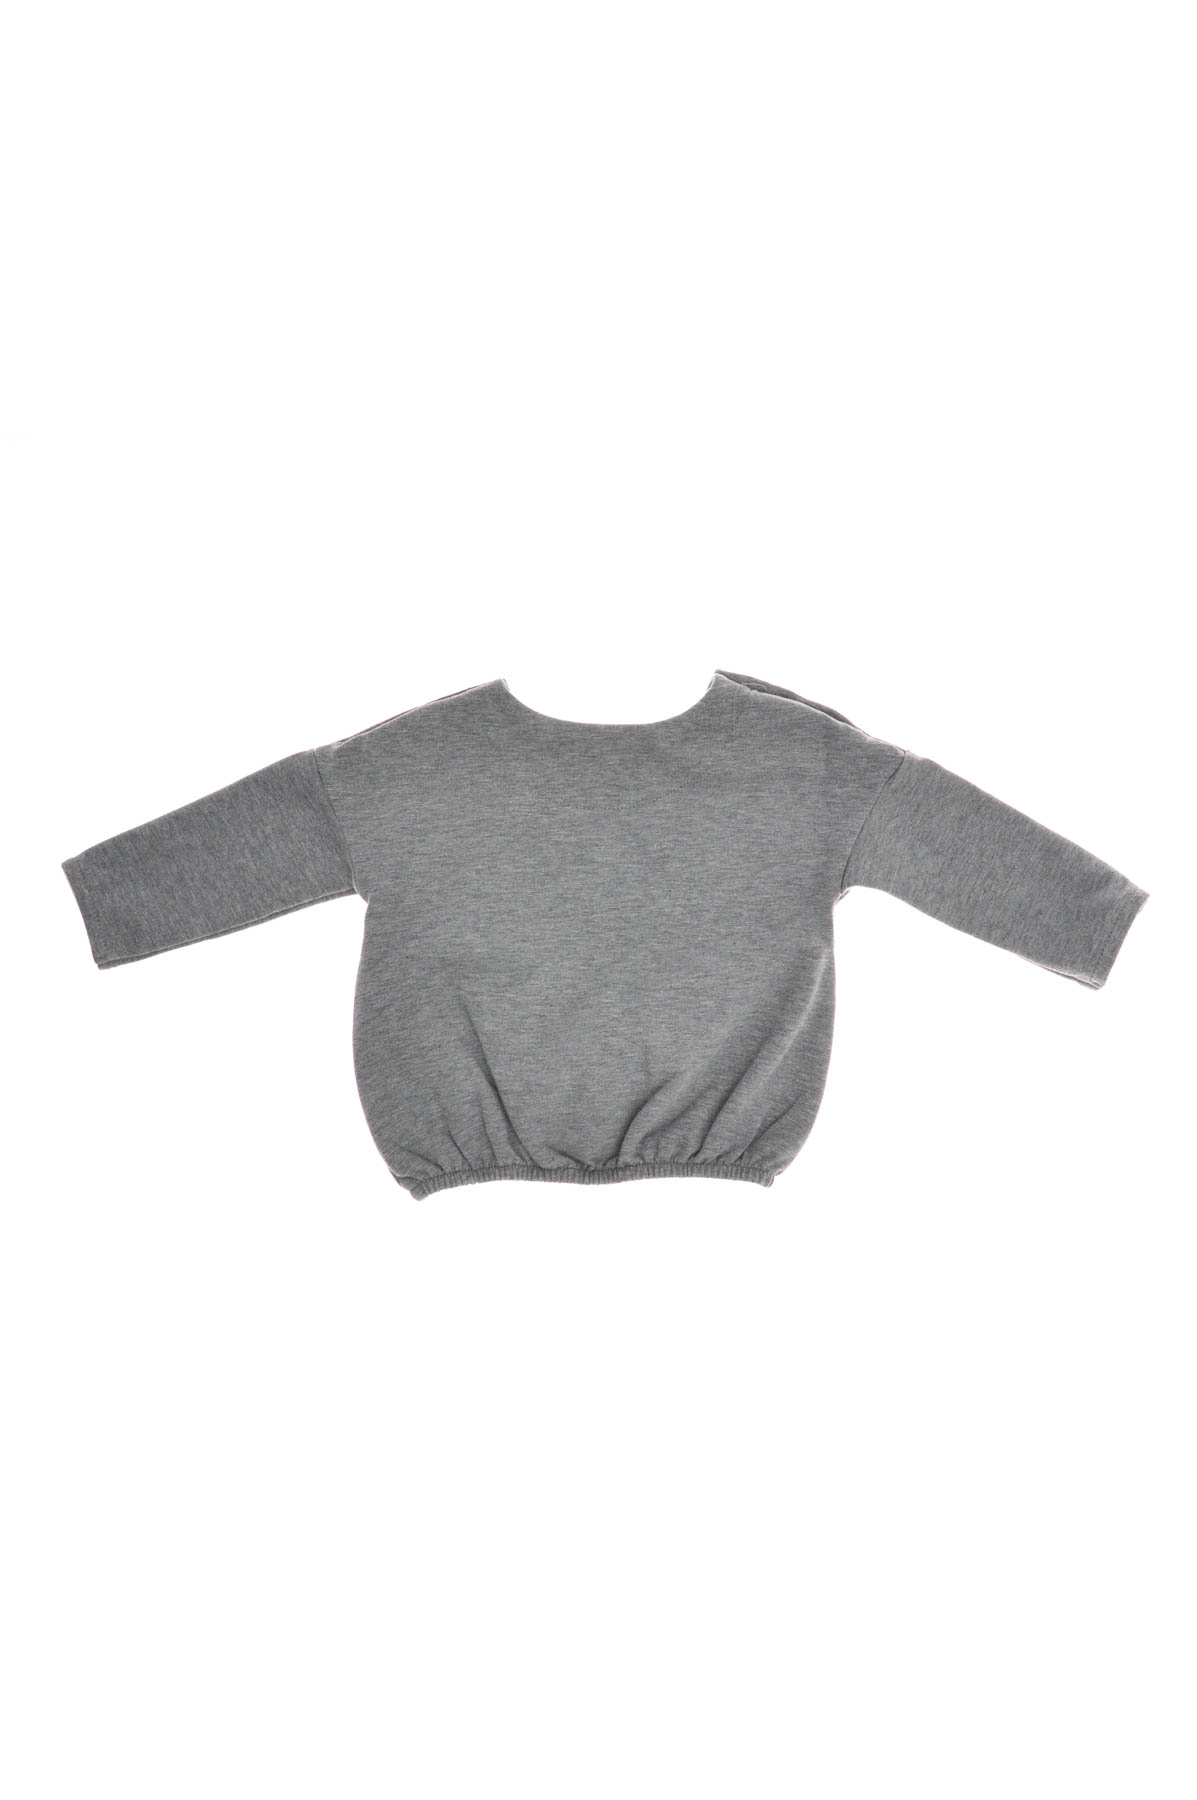 Βρεφική μπλούζα για κορίτσι - Belly Button - 1